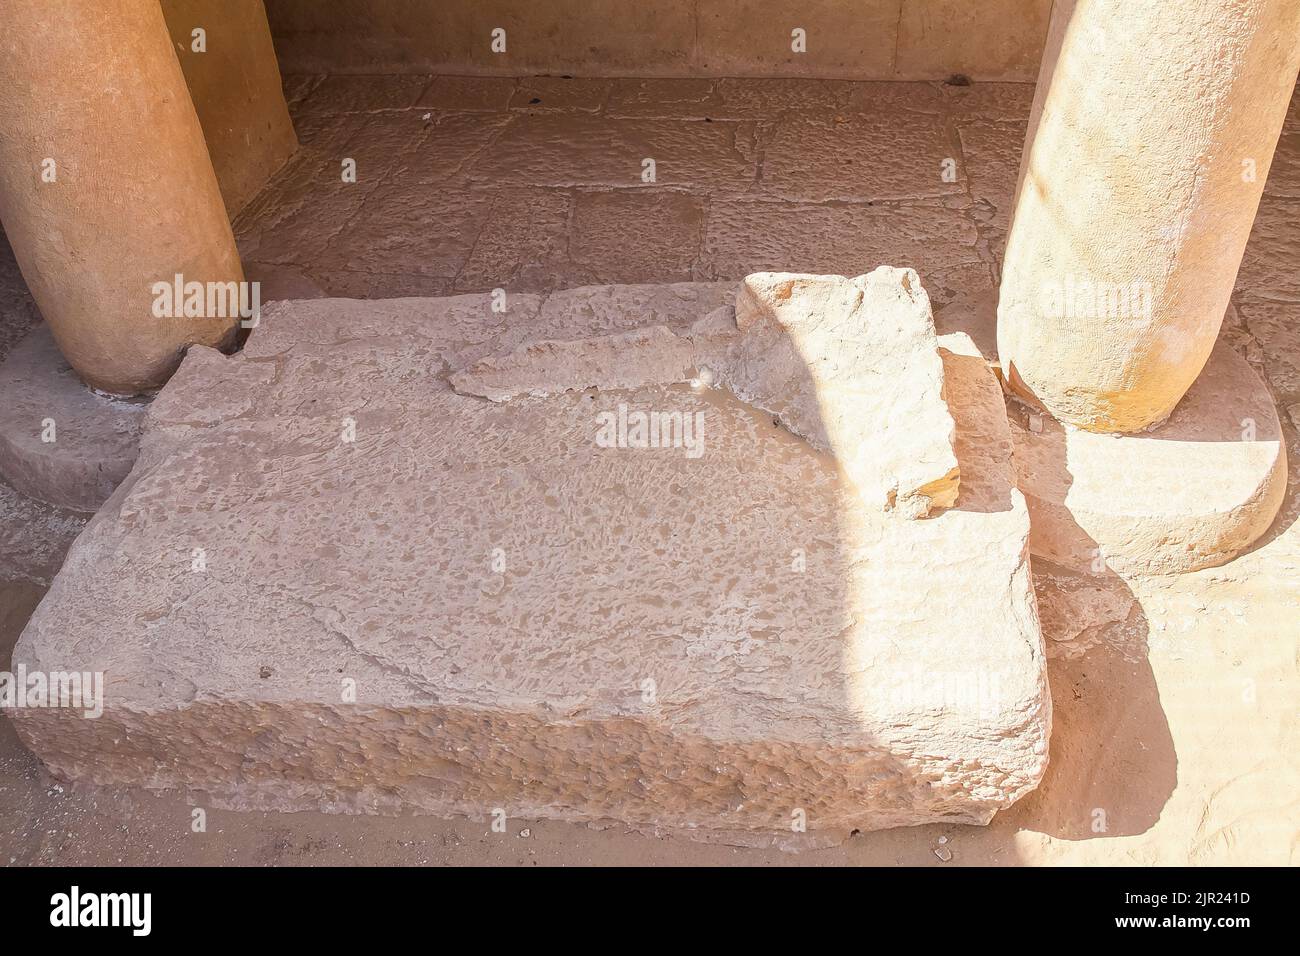 Egitto, Saqqara, tomba di Horemheb, forse i resti del piramidon, che avrebbe dovuto essere in cima alle cappelle. Foto Stock